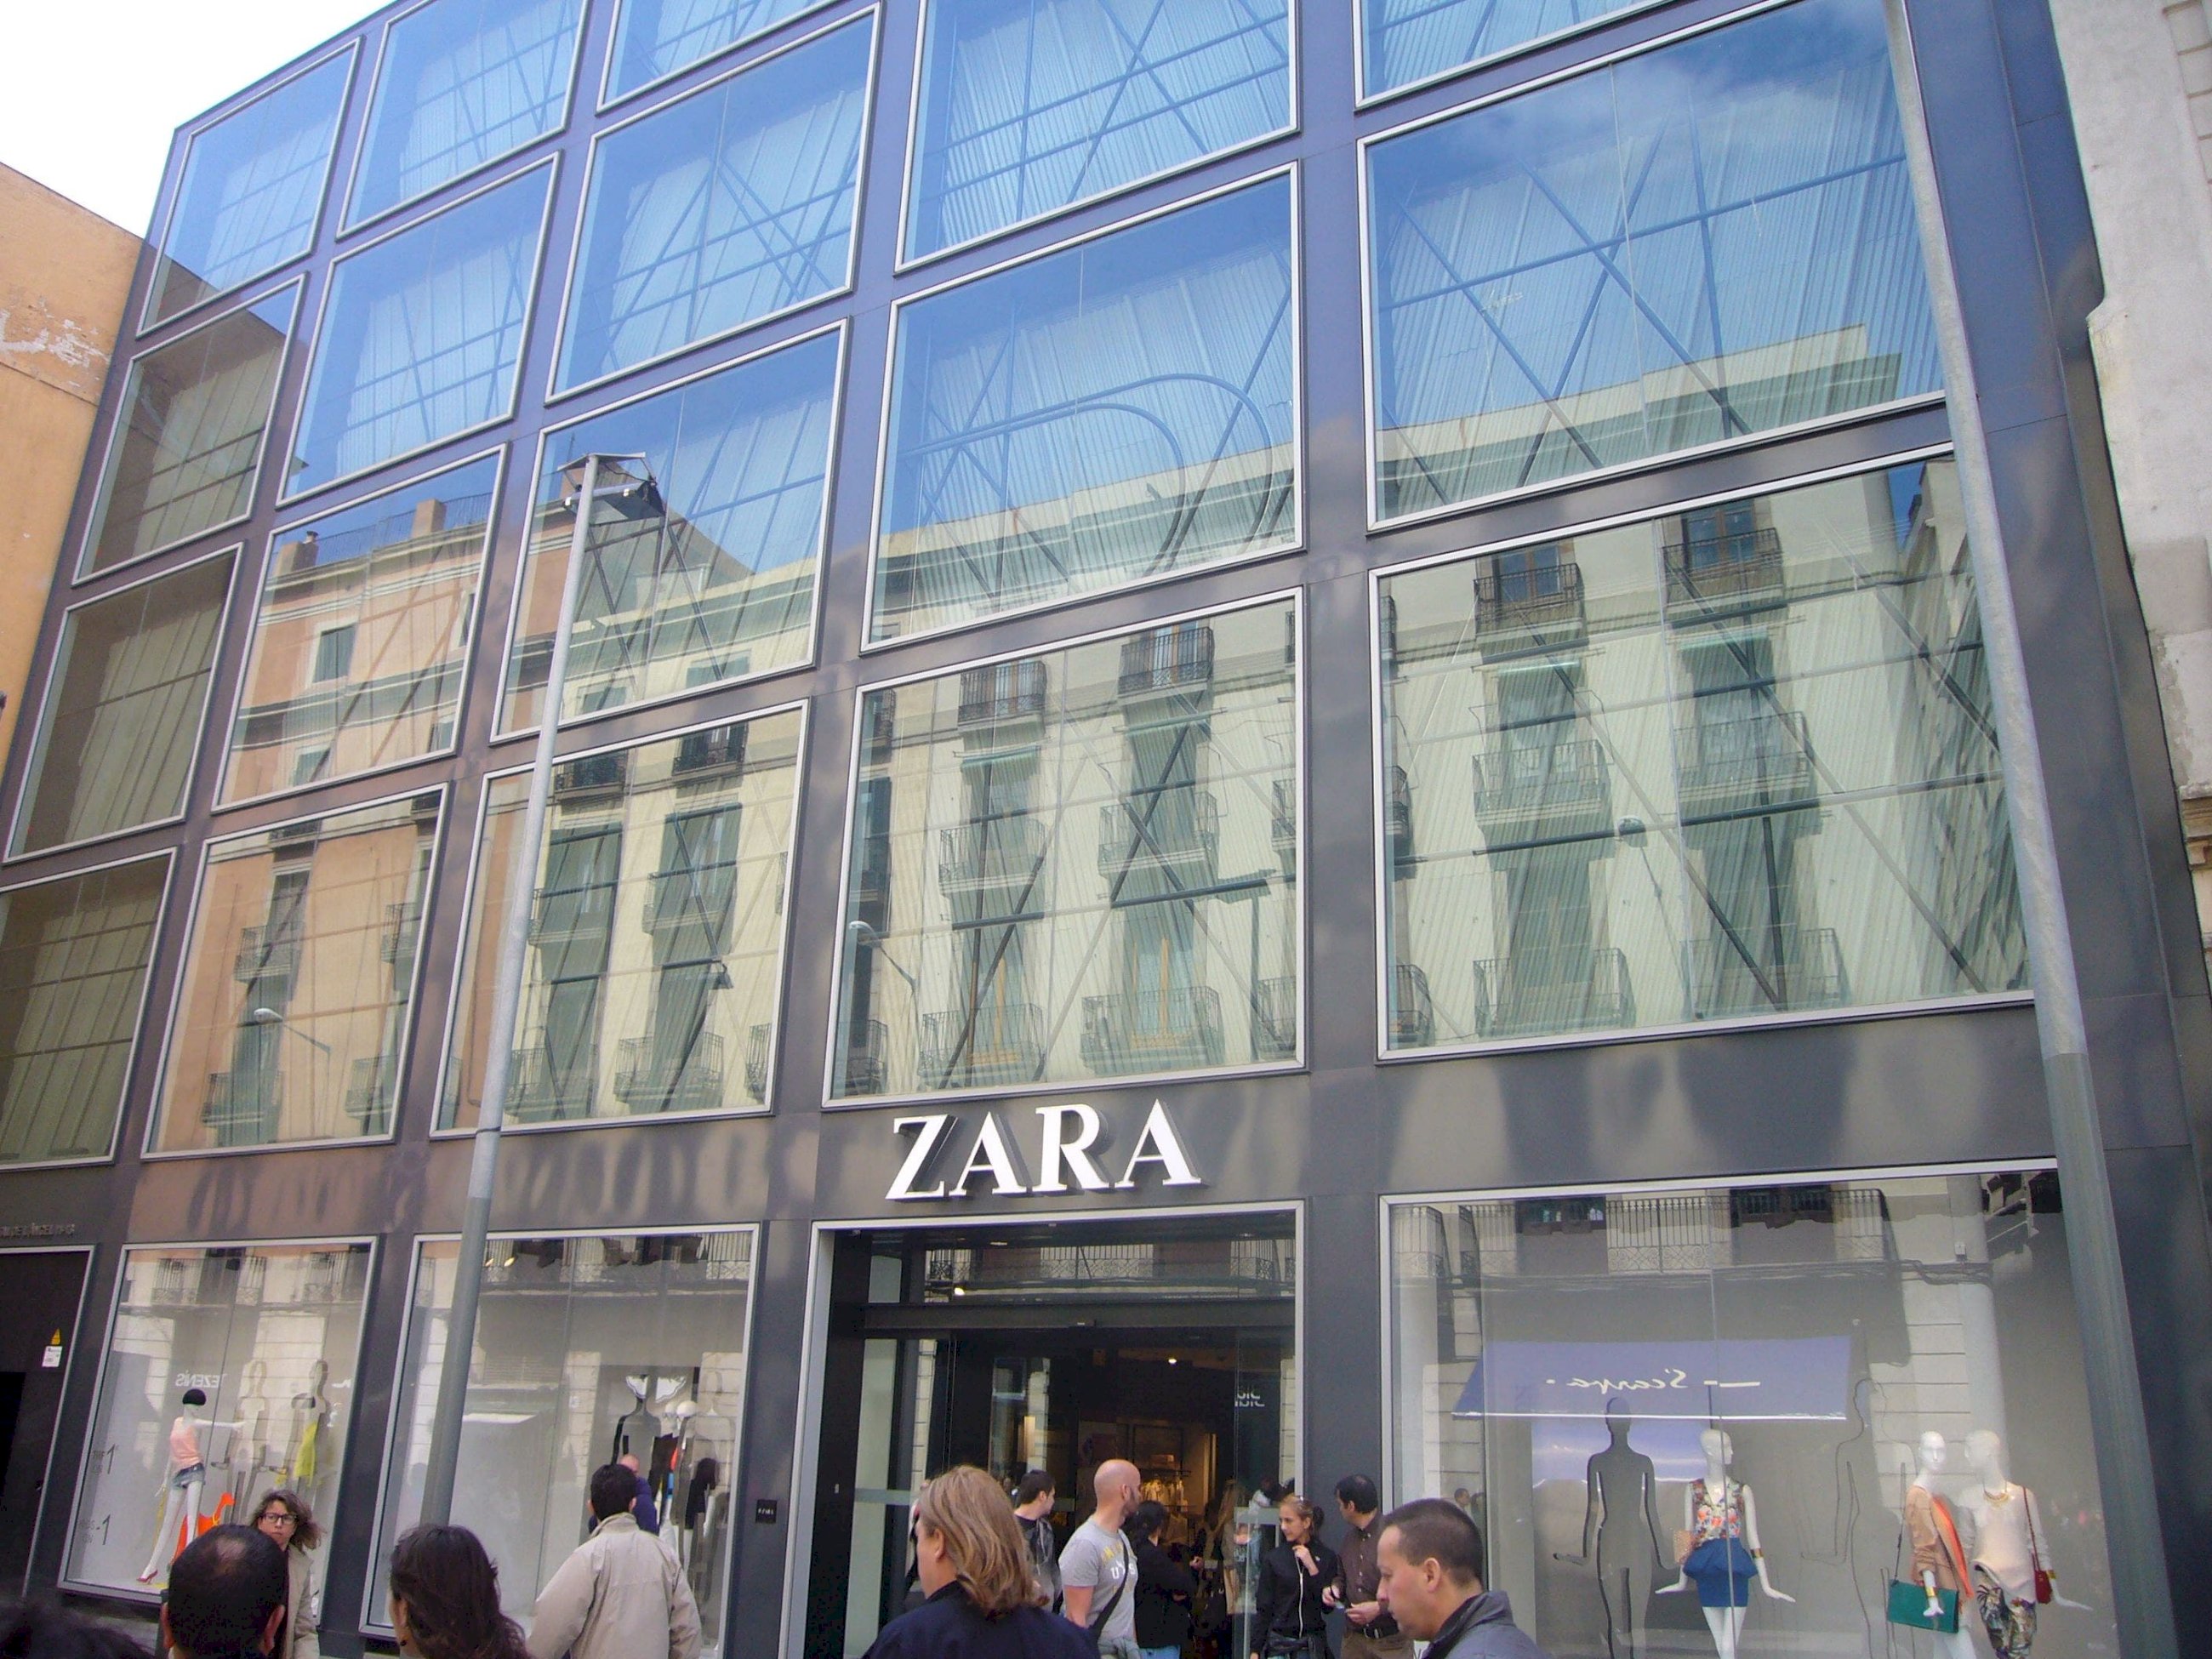 Los mocasines de Zara que se han colado entre los favoritos de los clientes